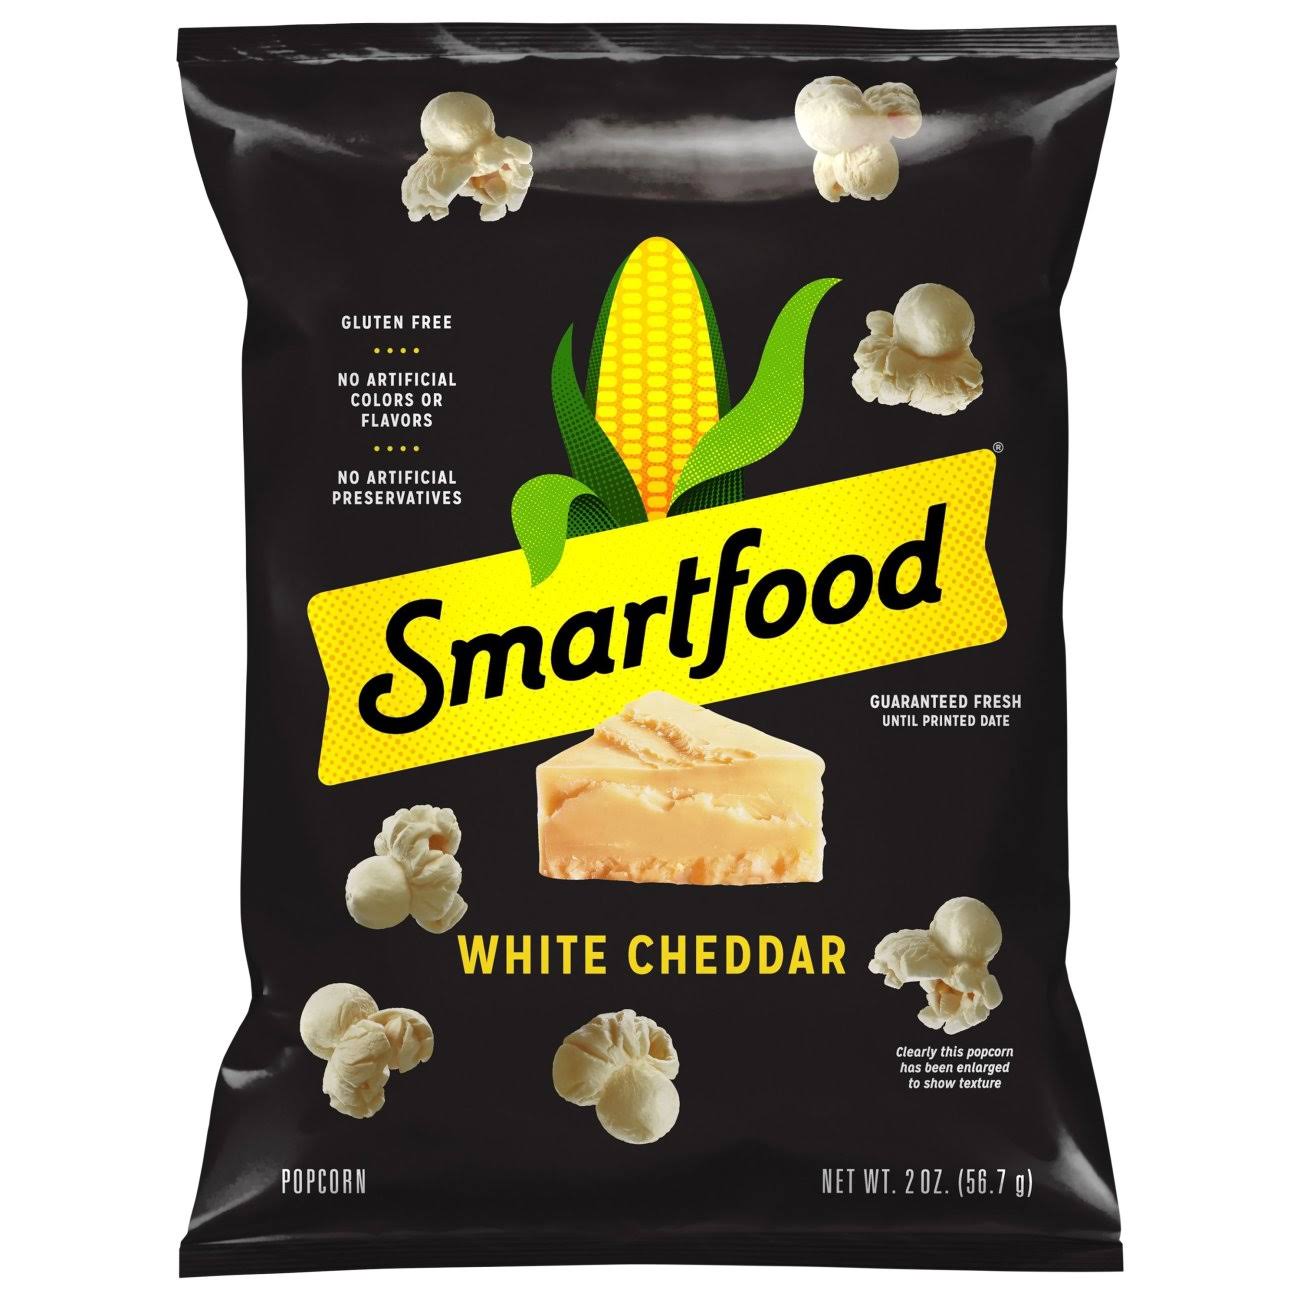 Smartfood Popcorn, White Cheddar Flavored - 2 oz